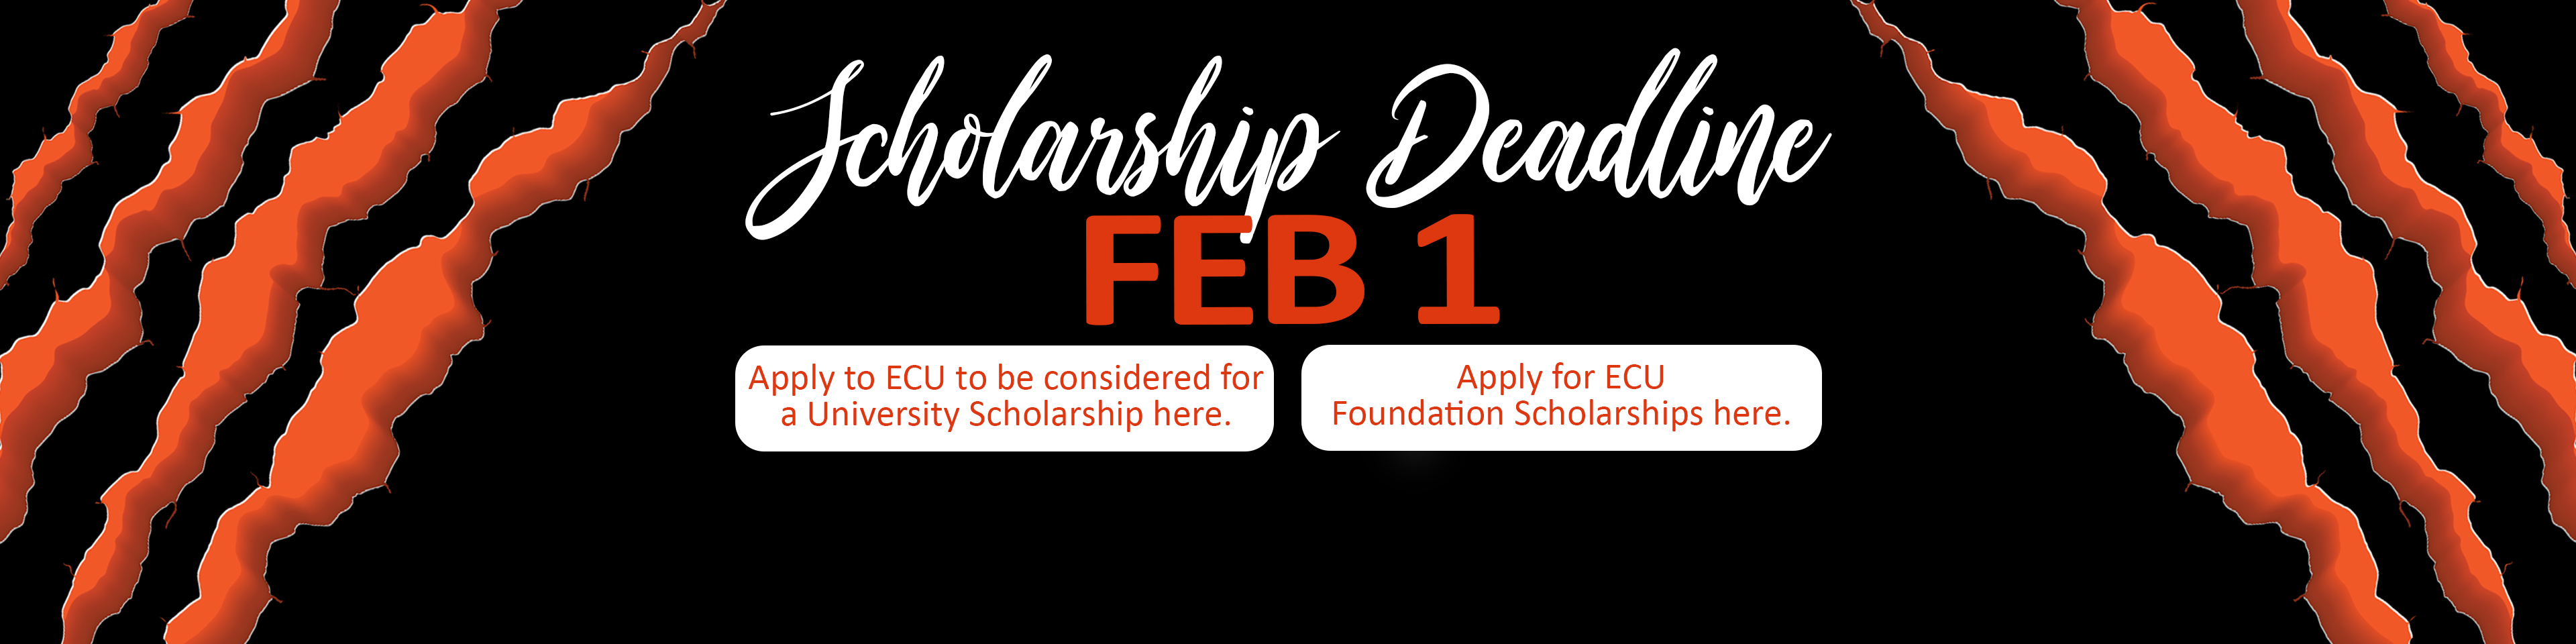 Scholarship Deadline is Feb. 1st.